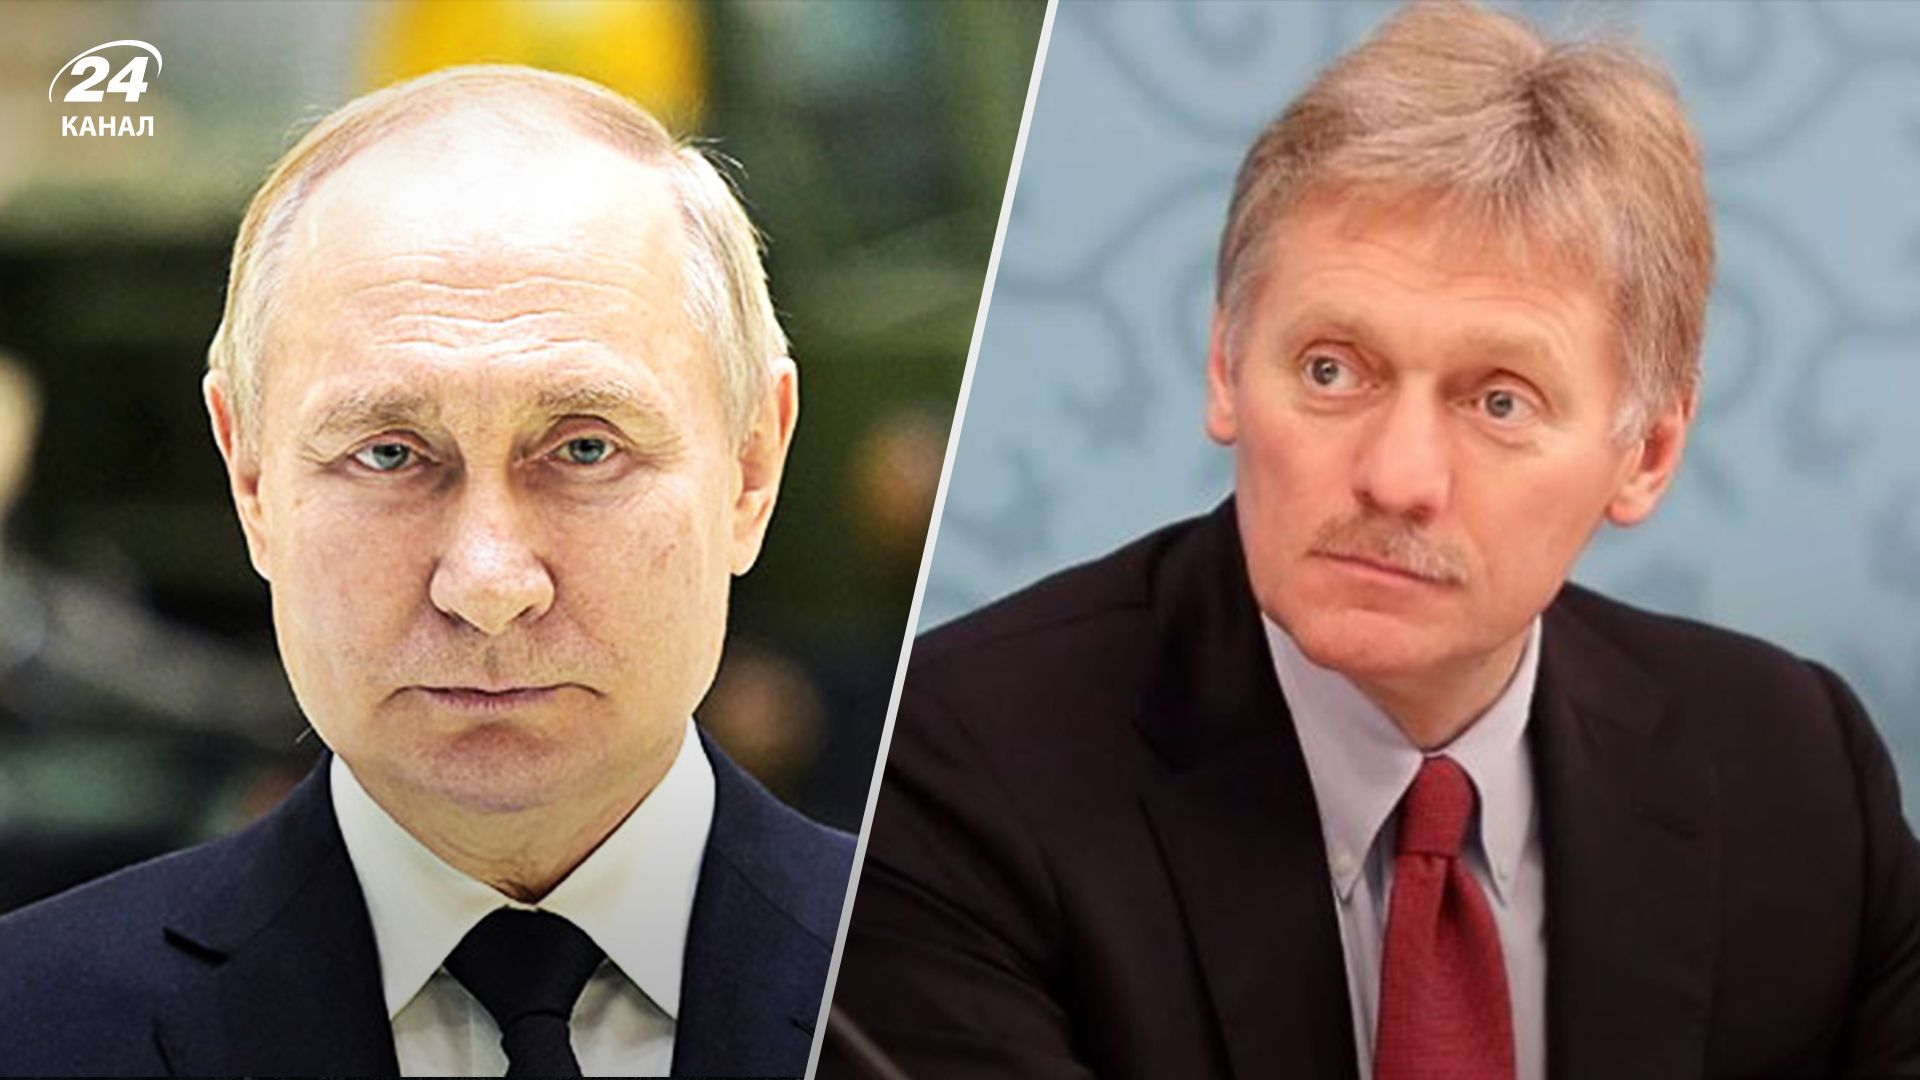 Пєсков відреагував на заяву ГУР України про "полювання" на Путіна